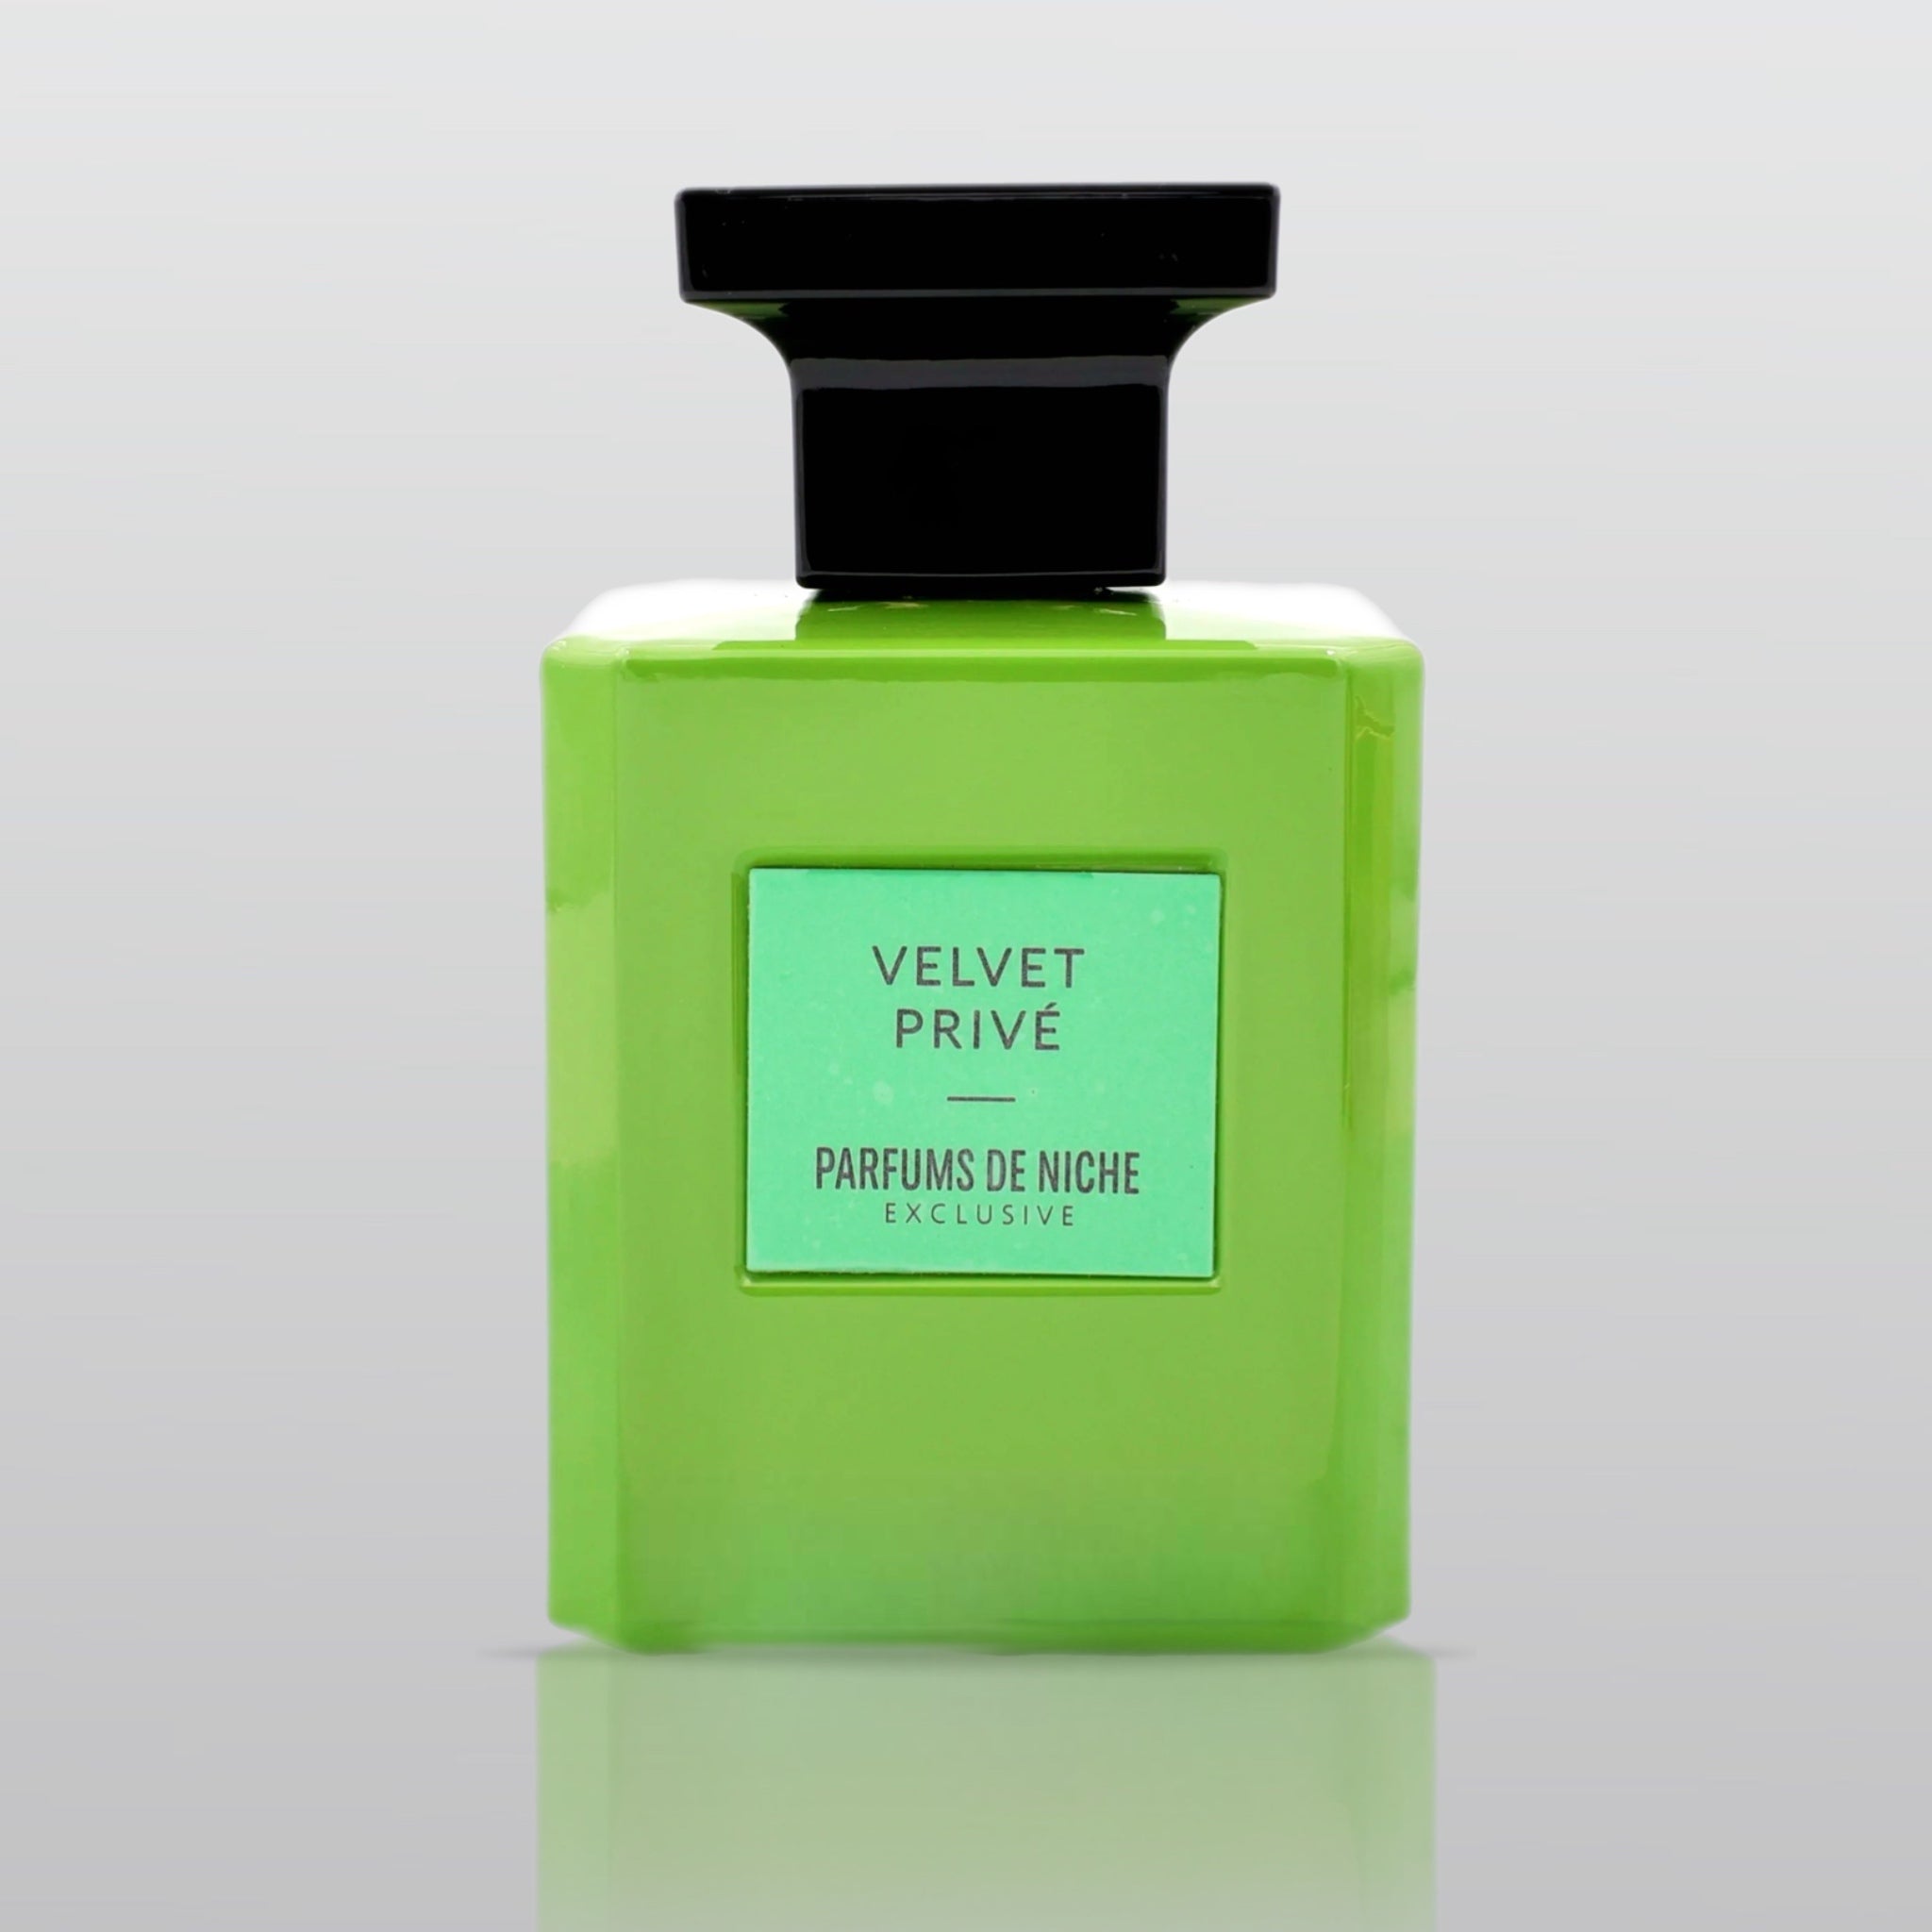 Velvet Privée - Parfum de niche